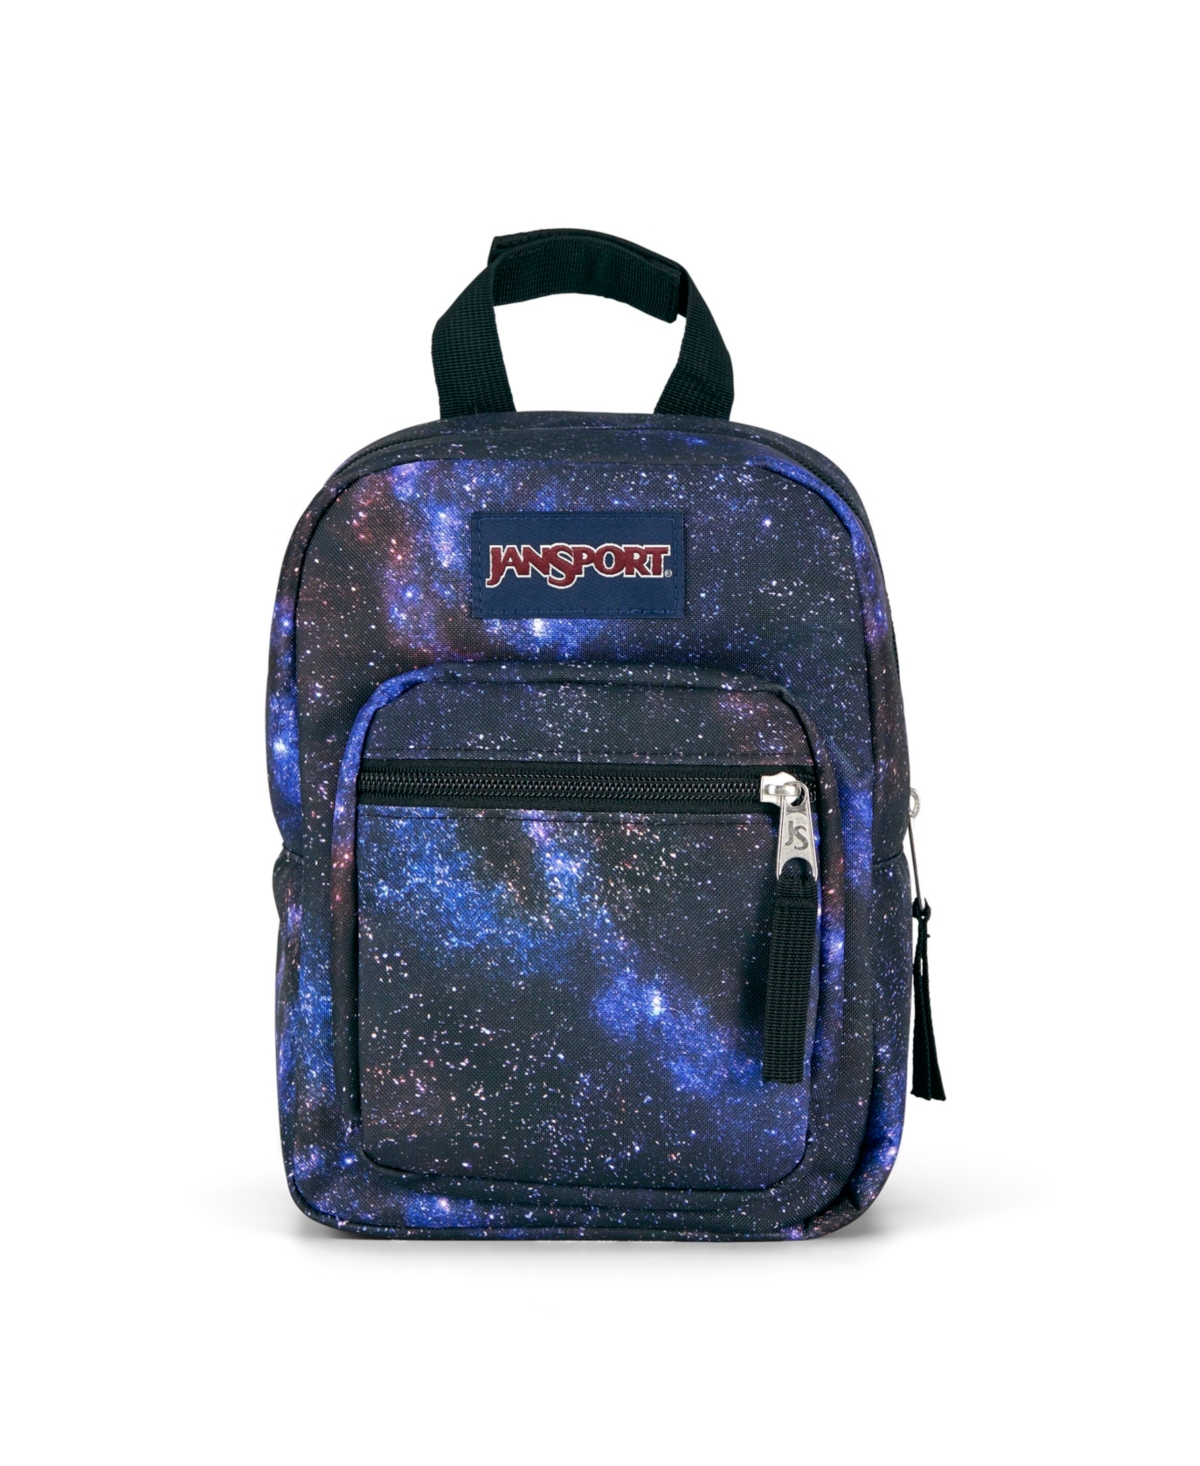 Big Break Lunch Bag - Cyberspace Galaxy